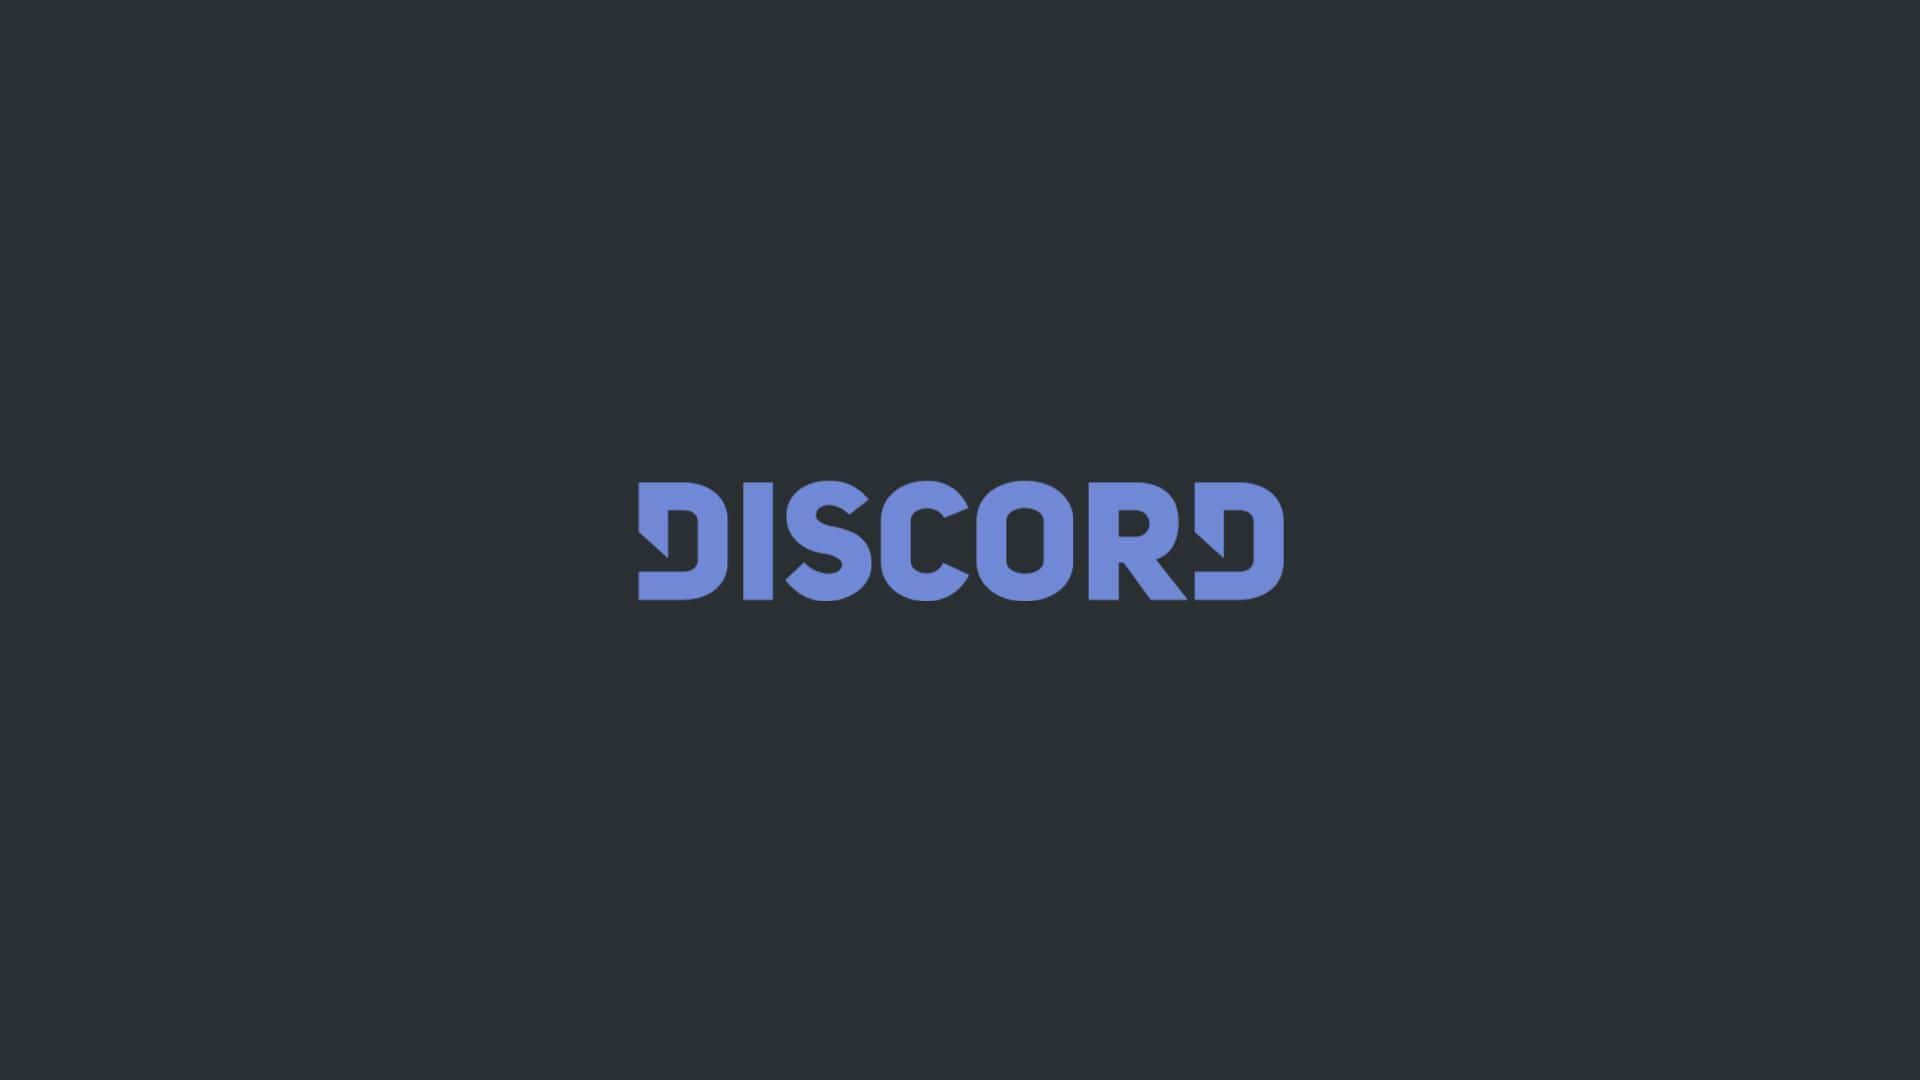 Discord Logo On A Dark Gradient Background Wallpaper